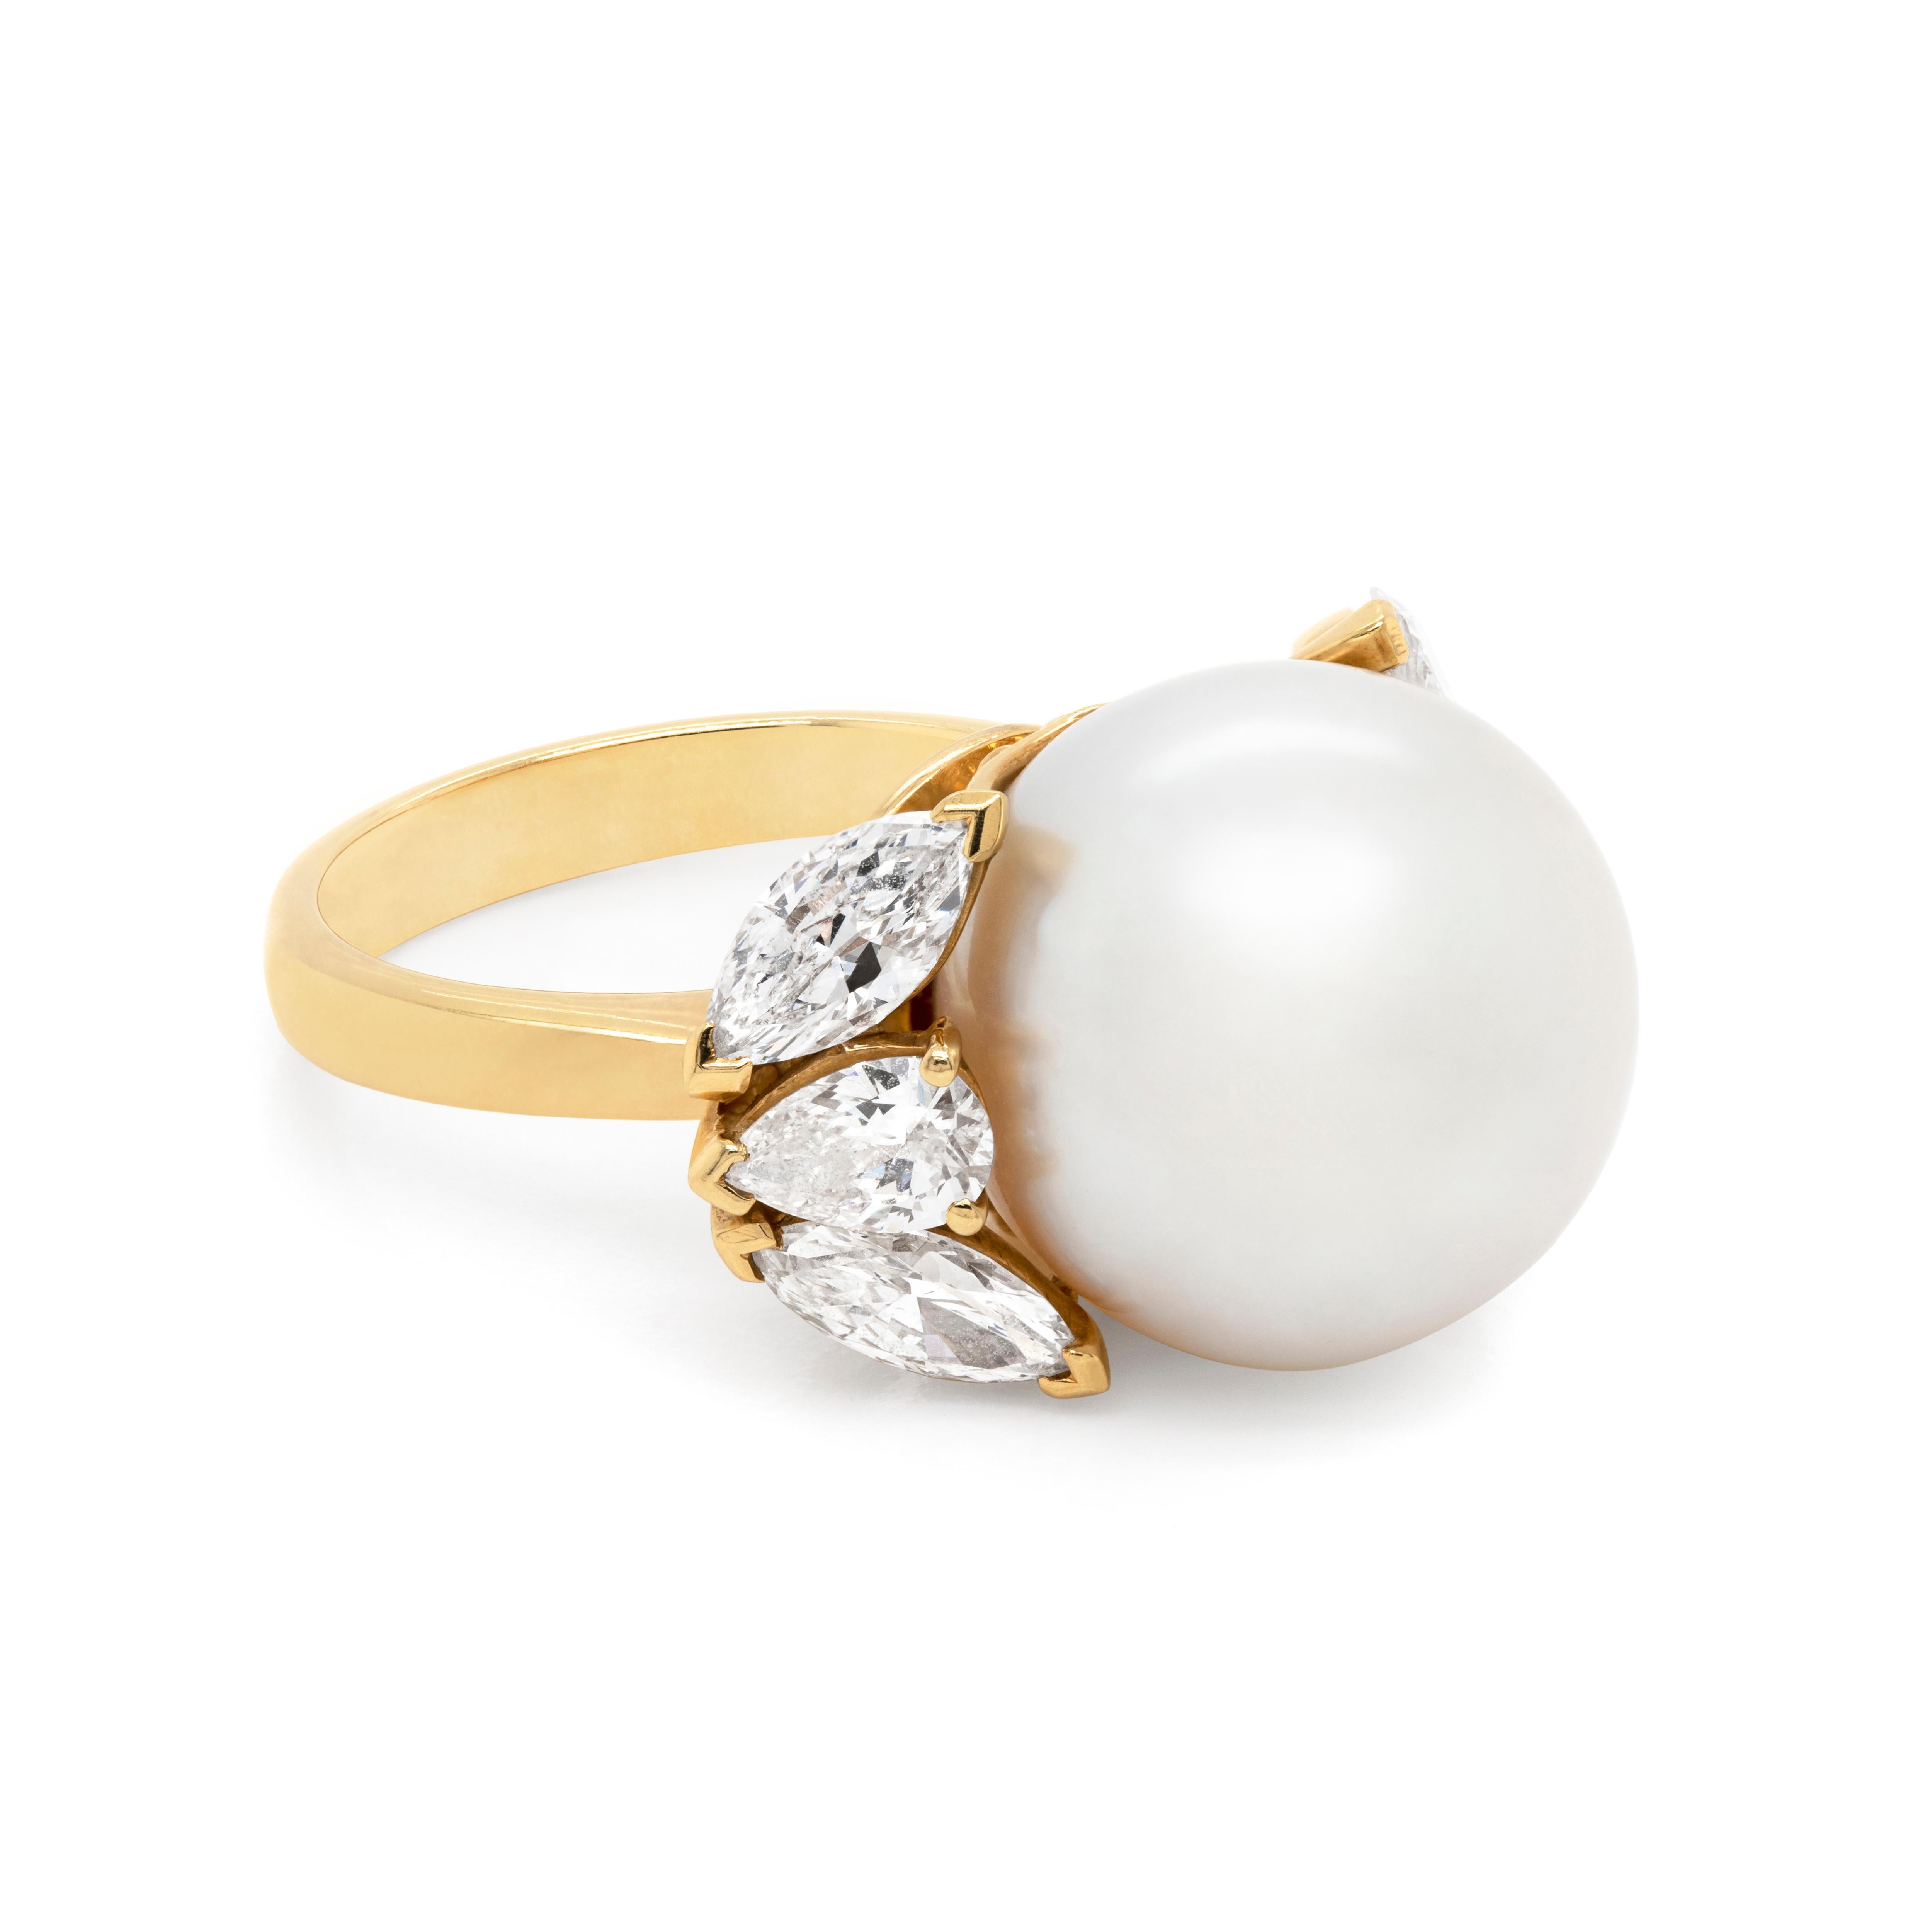 Dieser handgefertigte Ring zeigt eine wunderschöne weiße Südsee-Zuchtperle von 14,5 mm in der Mitte, begleitet von einer Trilogie von Diamanten, die die Perle auf beiden Seiten umarmen. Die Steine bestehen aus zwei marquiseförmigen Diamanten mit